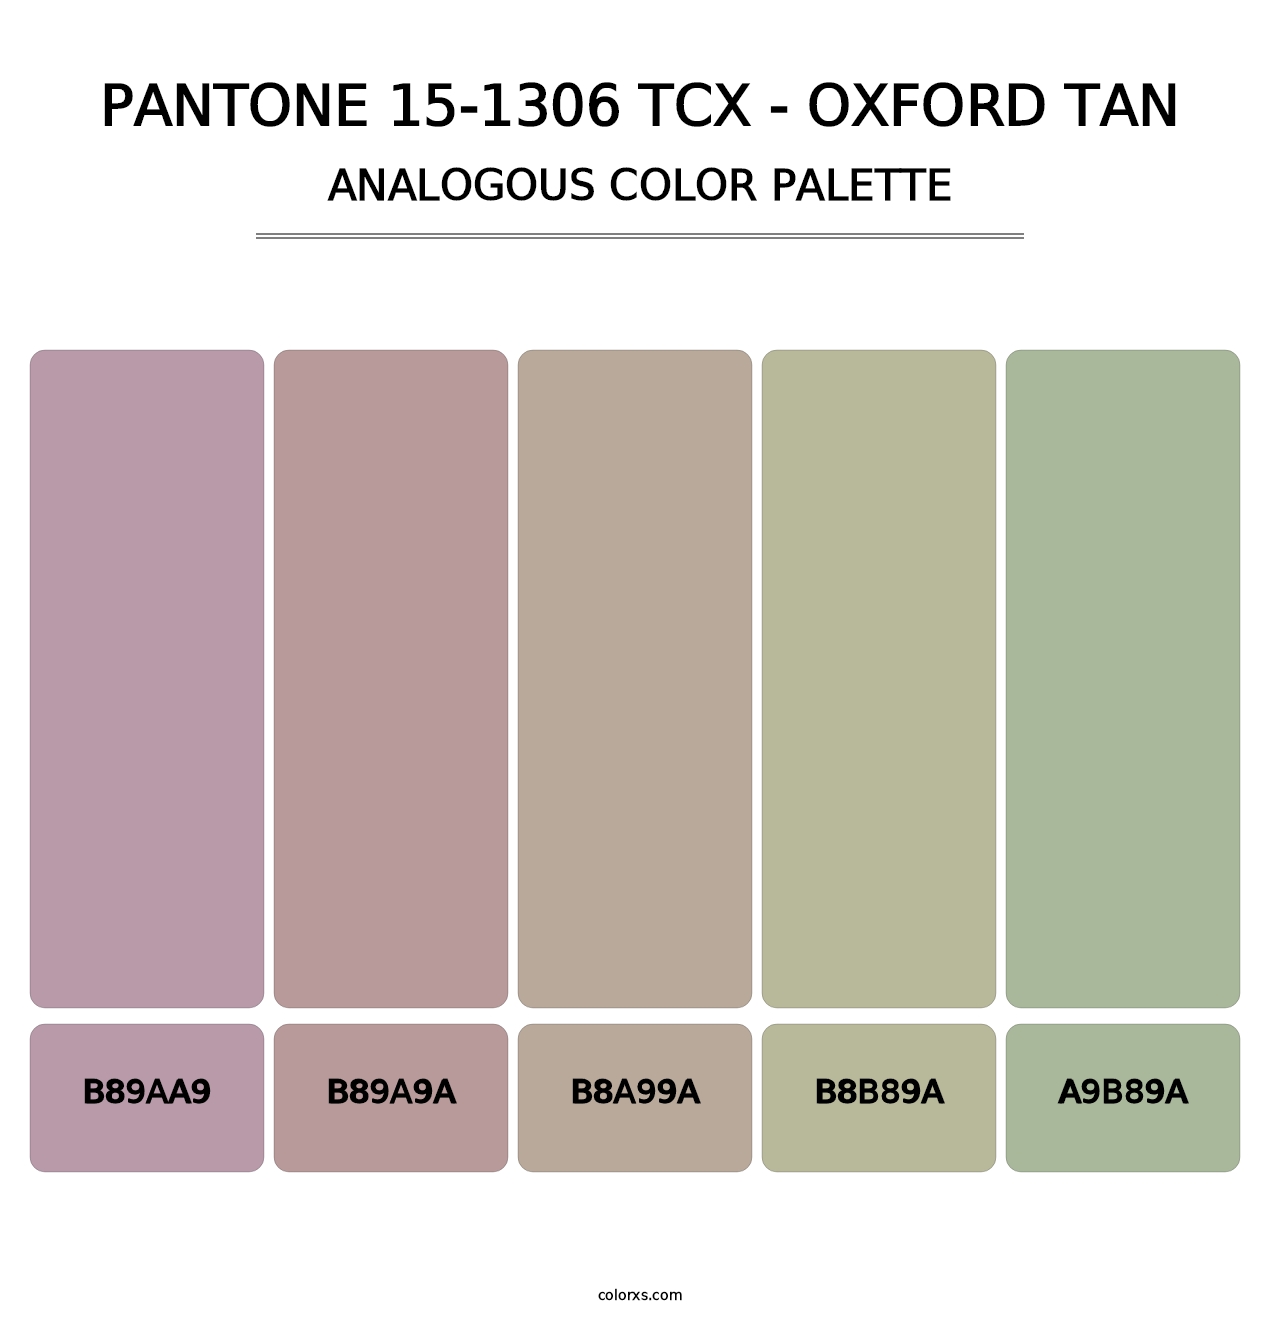 PANTONE 15-1306 TCX - Oxford Tan - Analogous Color Palette